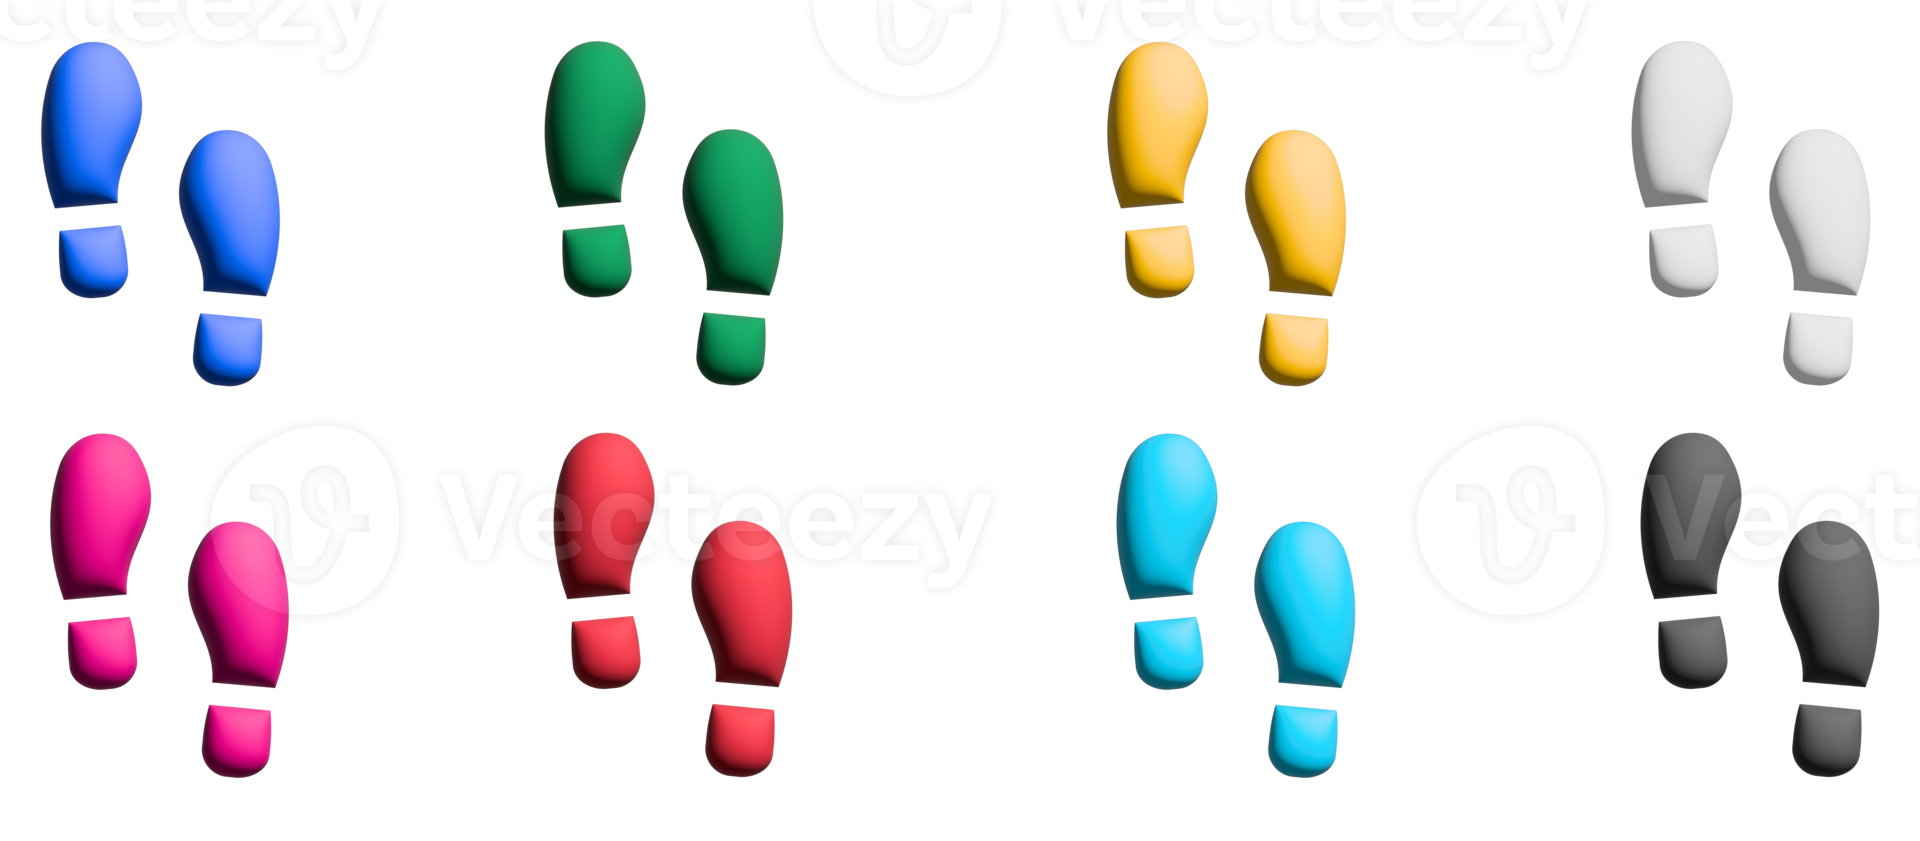 ensemble d'icônes 3d de maks de chaussures, éléments graphiques de symboles colorés png